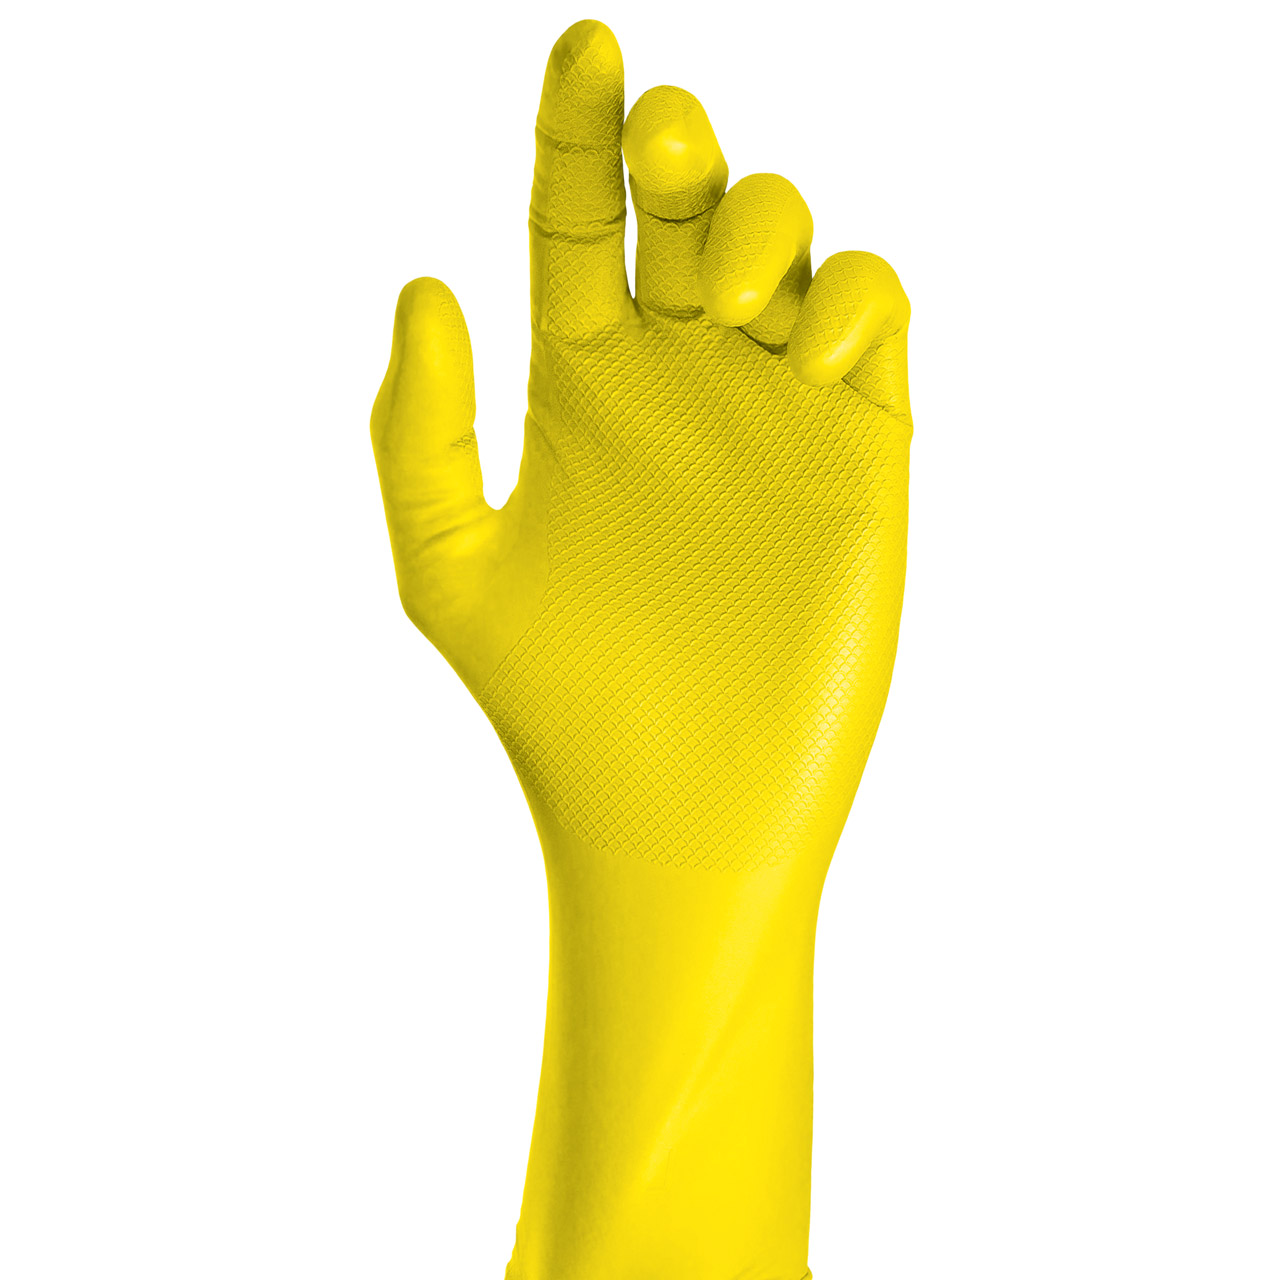 GRIPPAZ 306 Schutzhandschuhe NITRIL Handschuhe GELB Größe L (50 Stück)